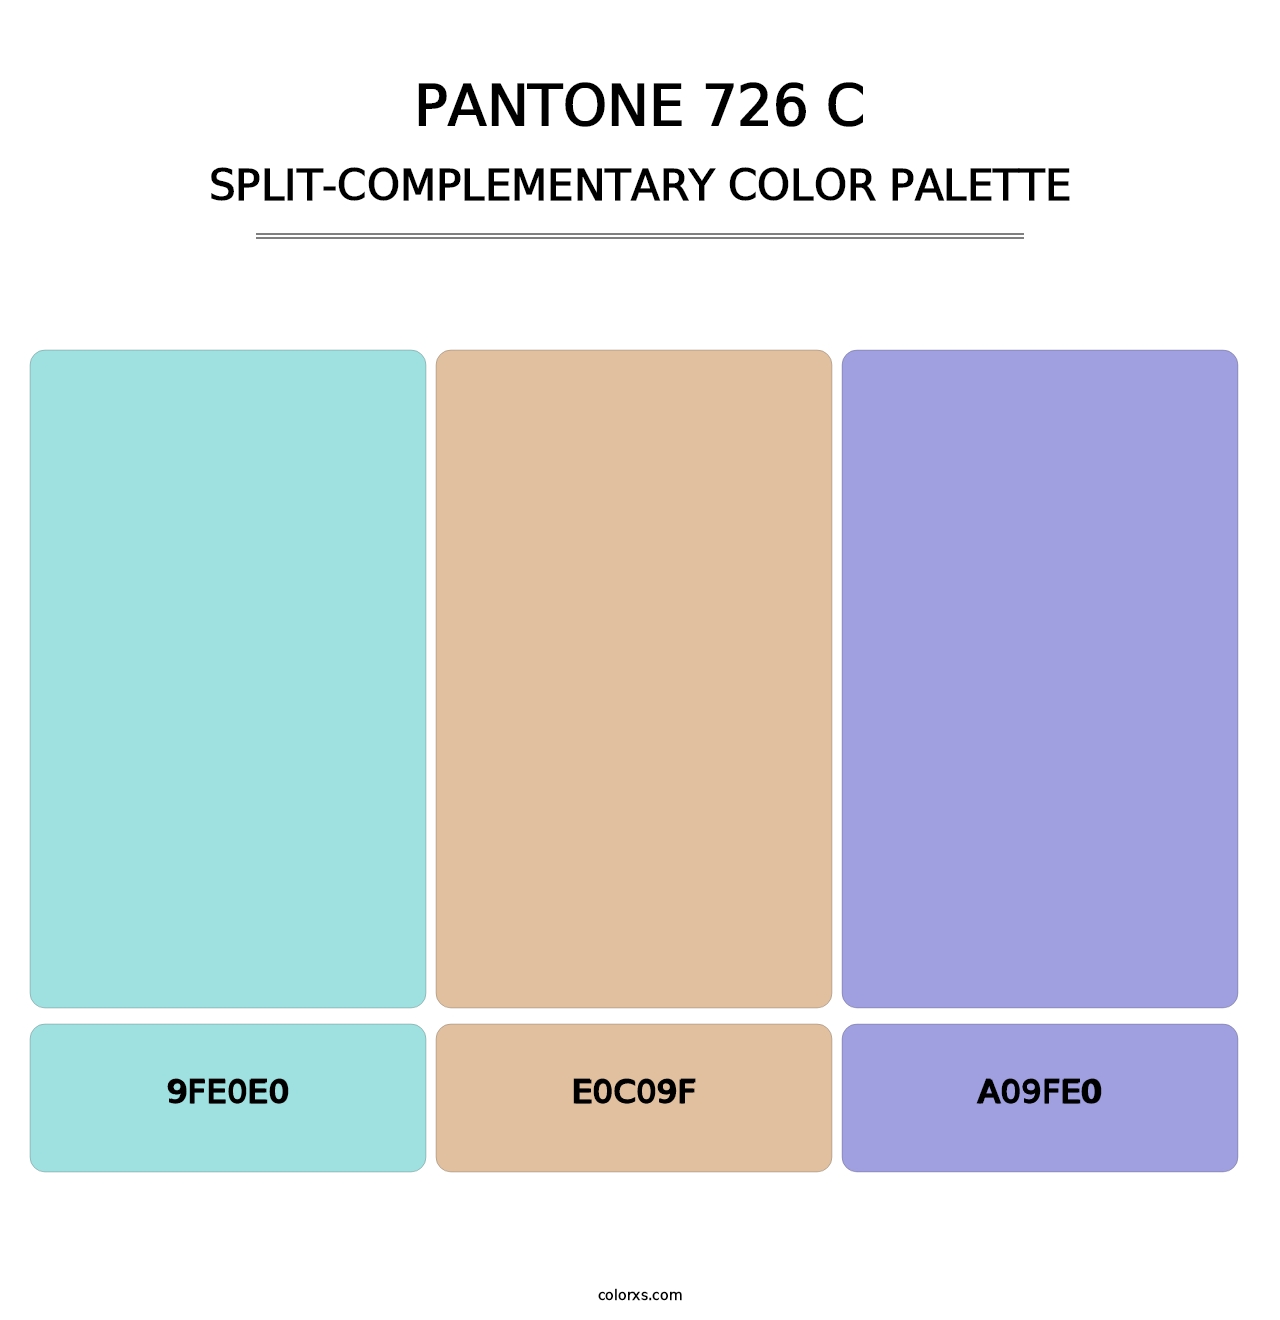 PANTONE 726 C - Split-Complementary Color Palette